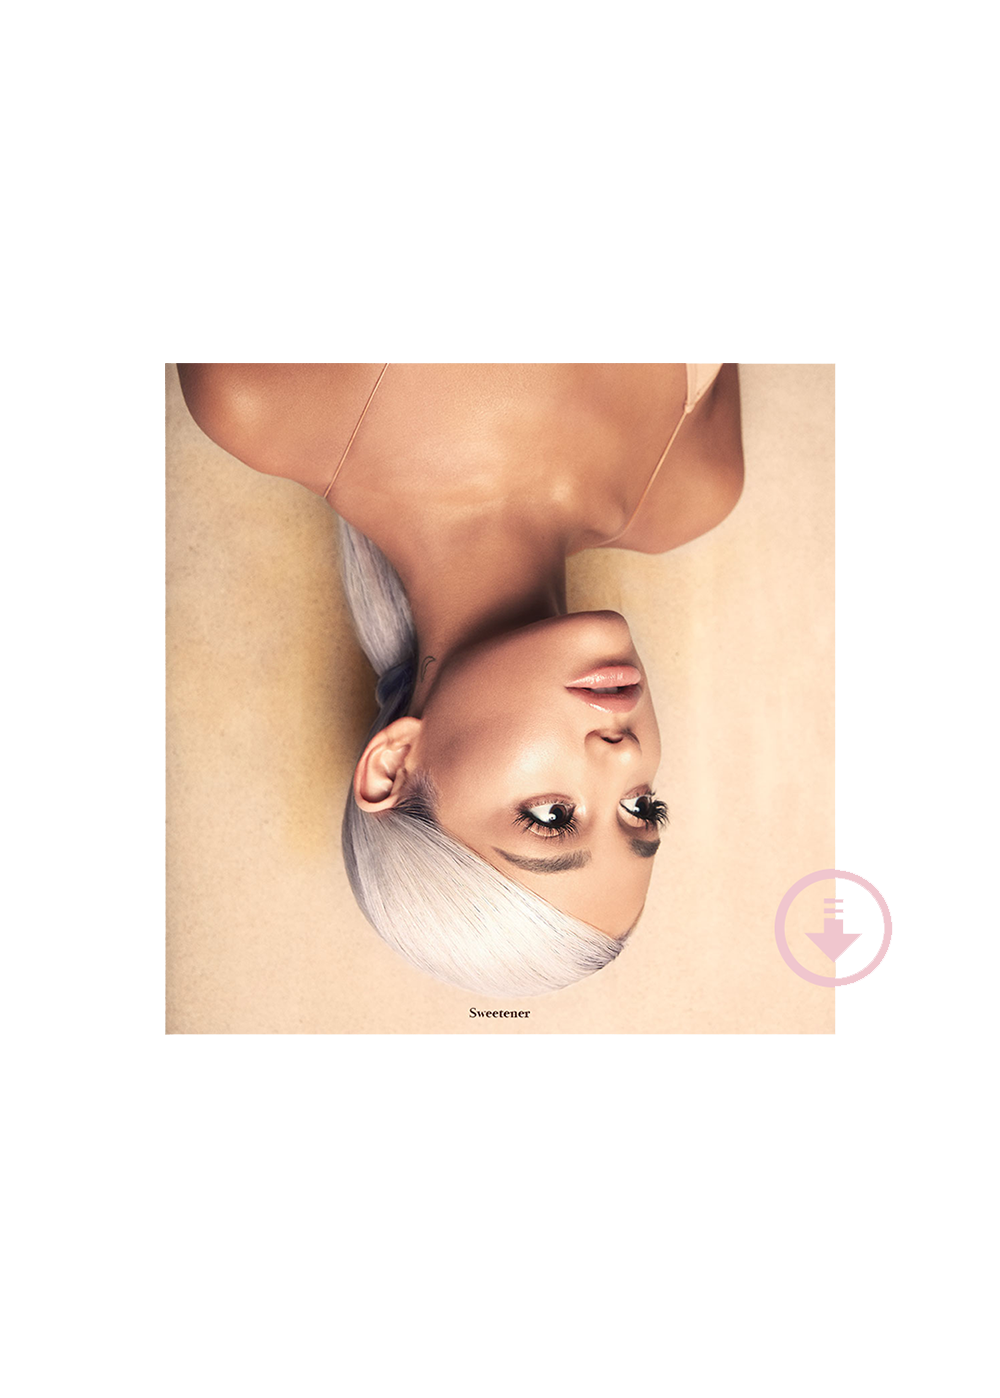 Dangerous Woman Digital Album – Ariana Grande